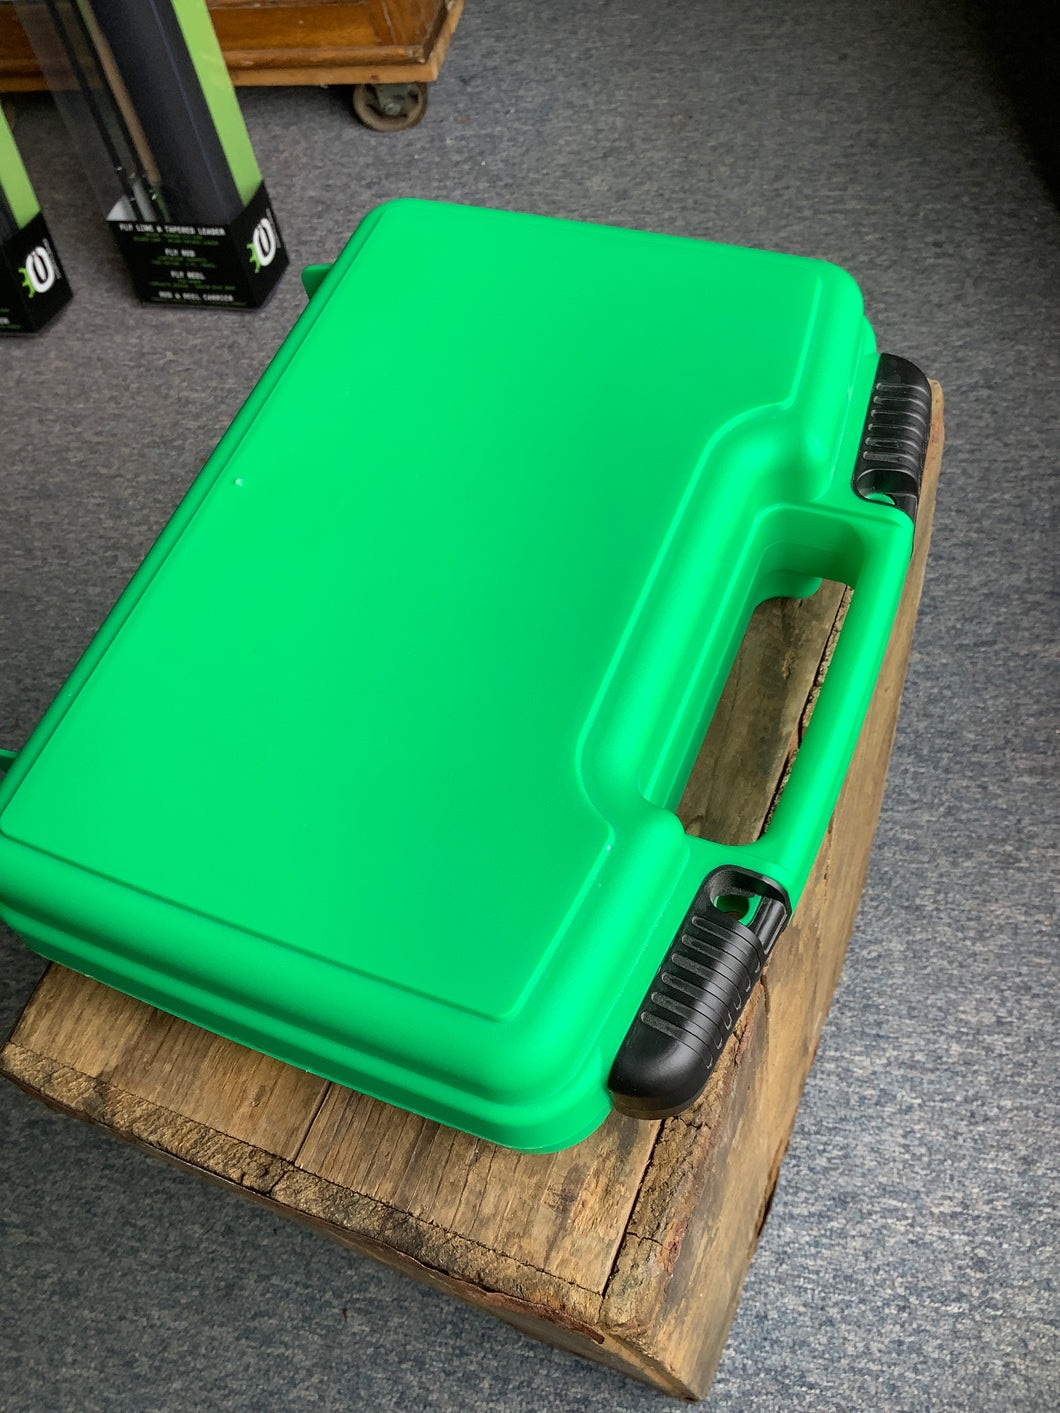 The Bright Green Streamer Box